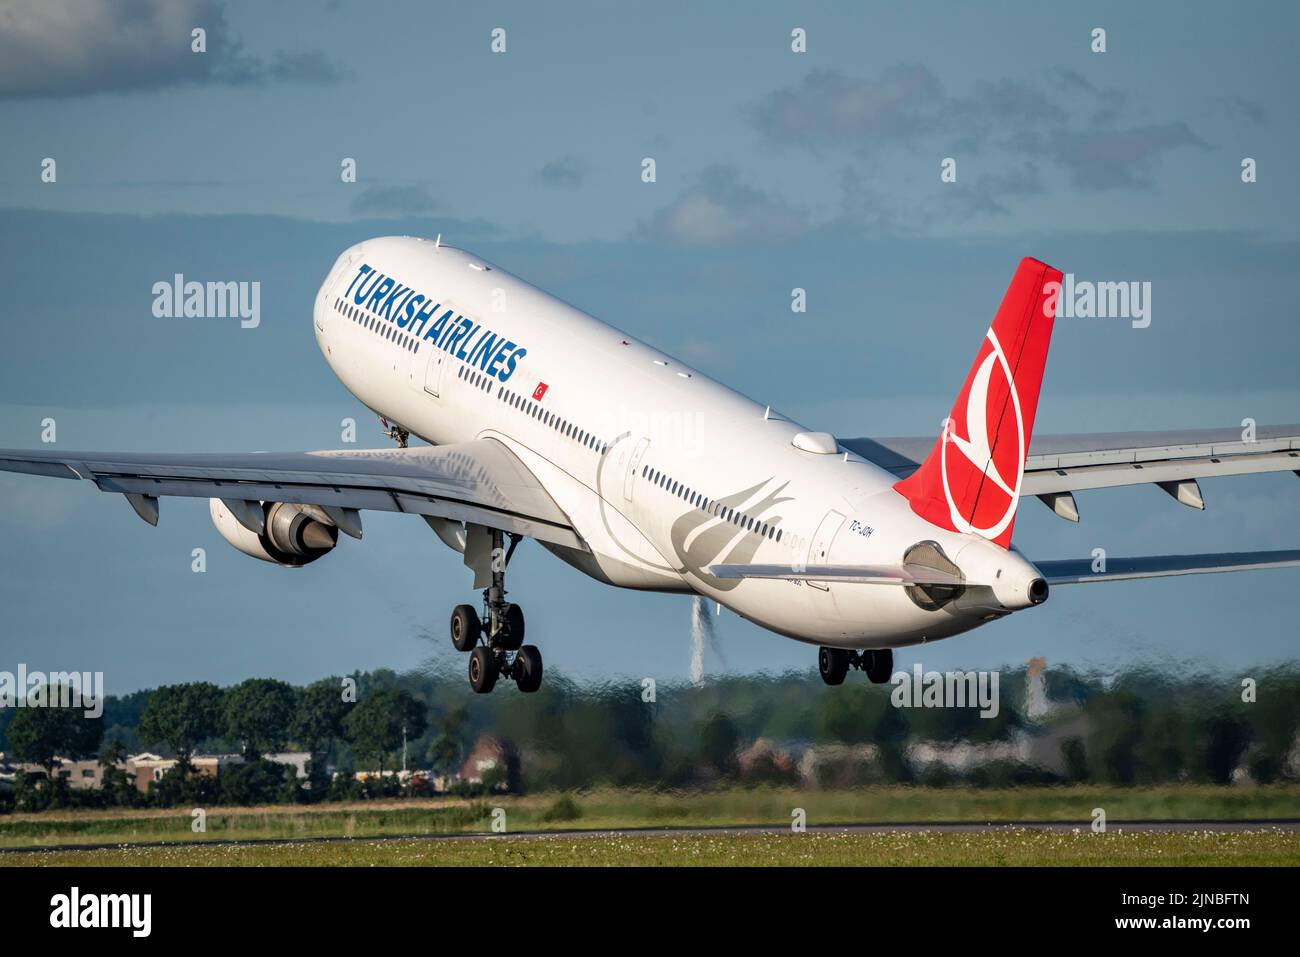 Aéroport d'Amsterdam Shiphol, Polderbaan, l'une des 6 pistes, contrôle aérien de tour, TC-JOH Turkish Airlines Airbus A330-300, décollage, Banque D'Images